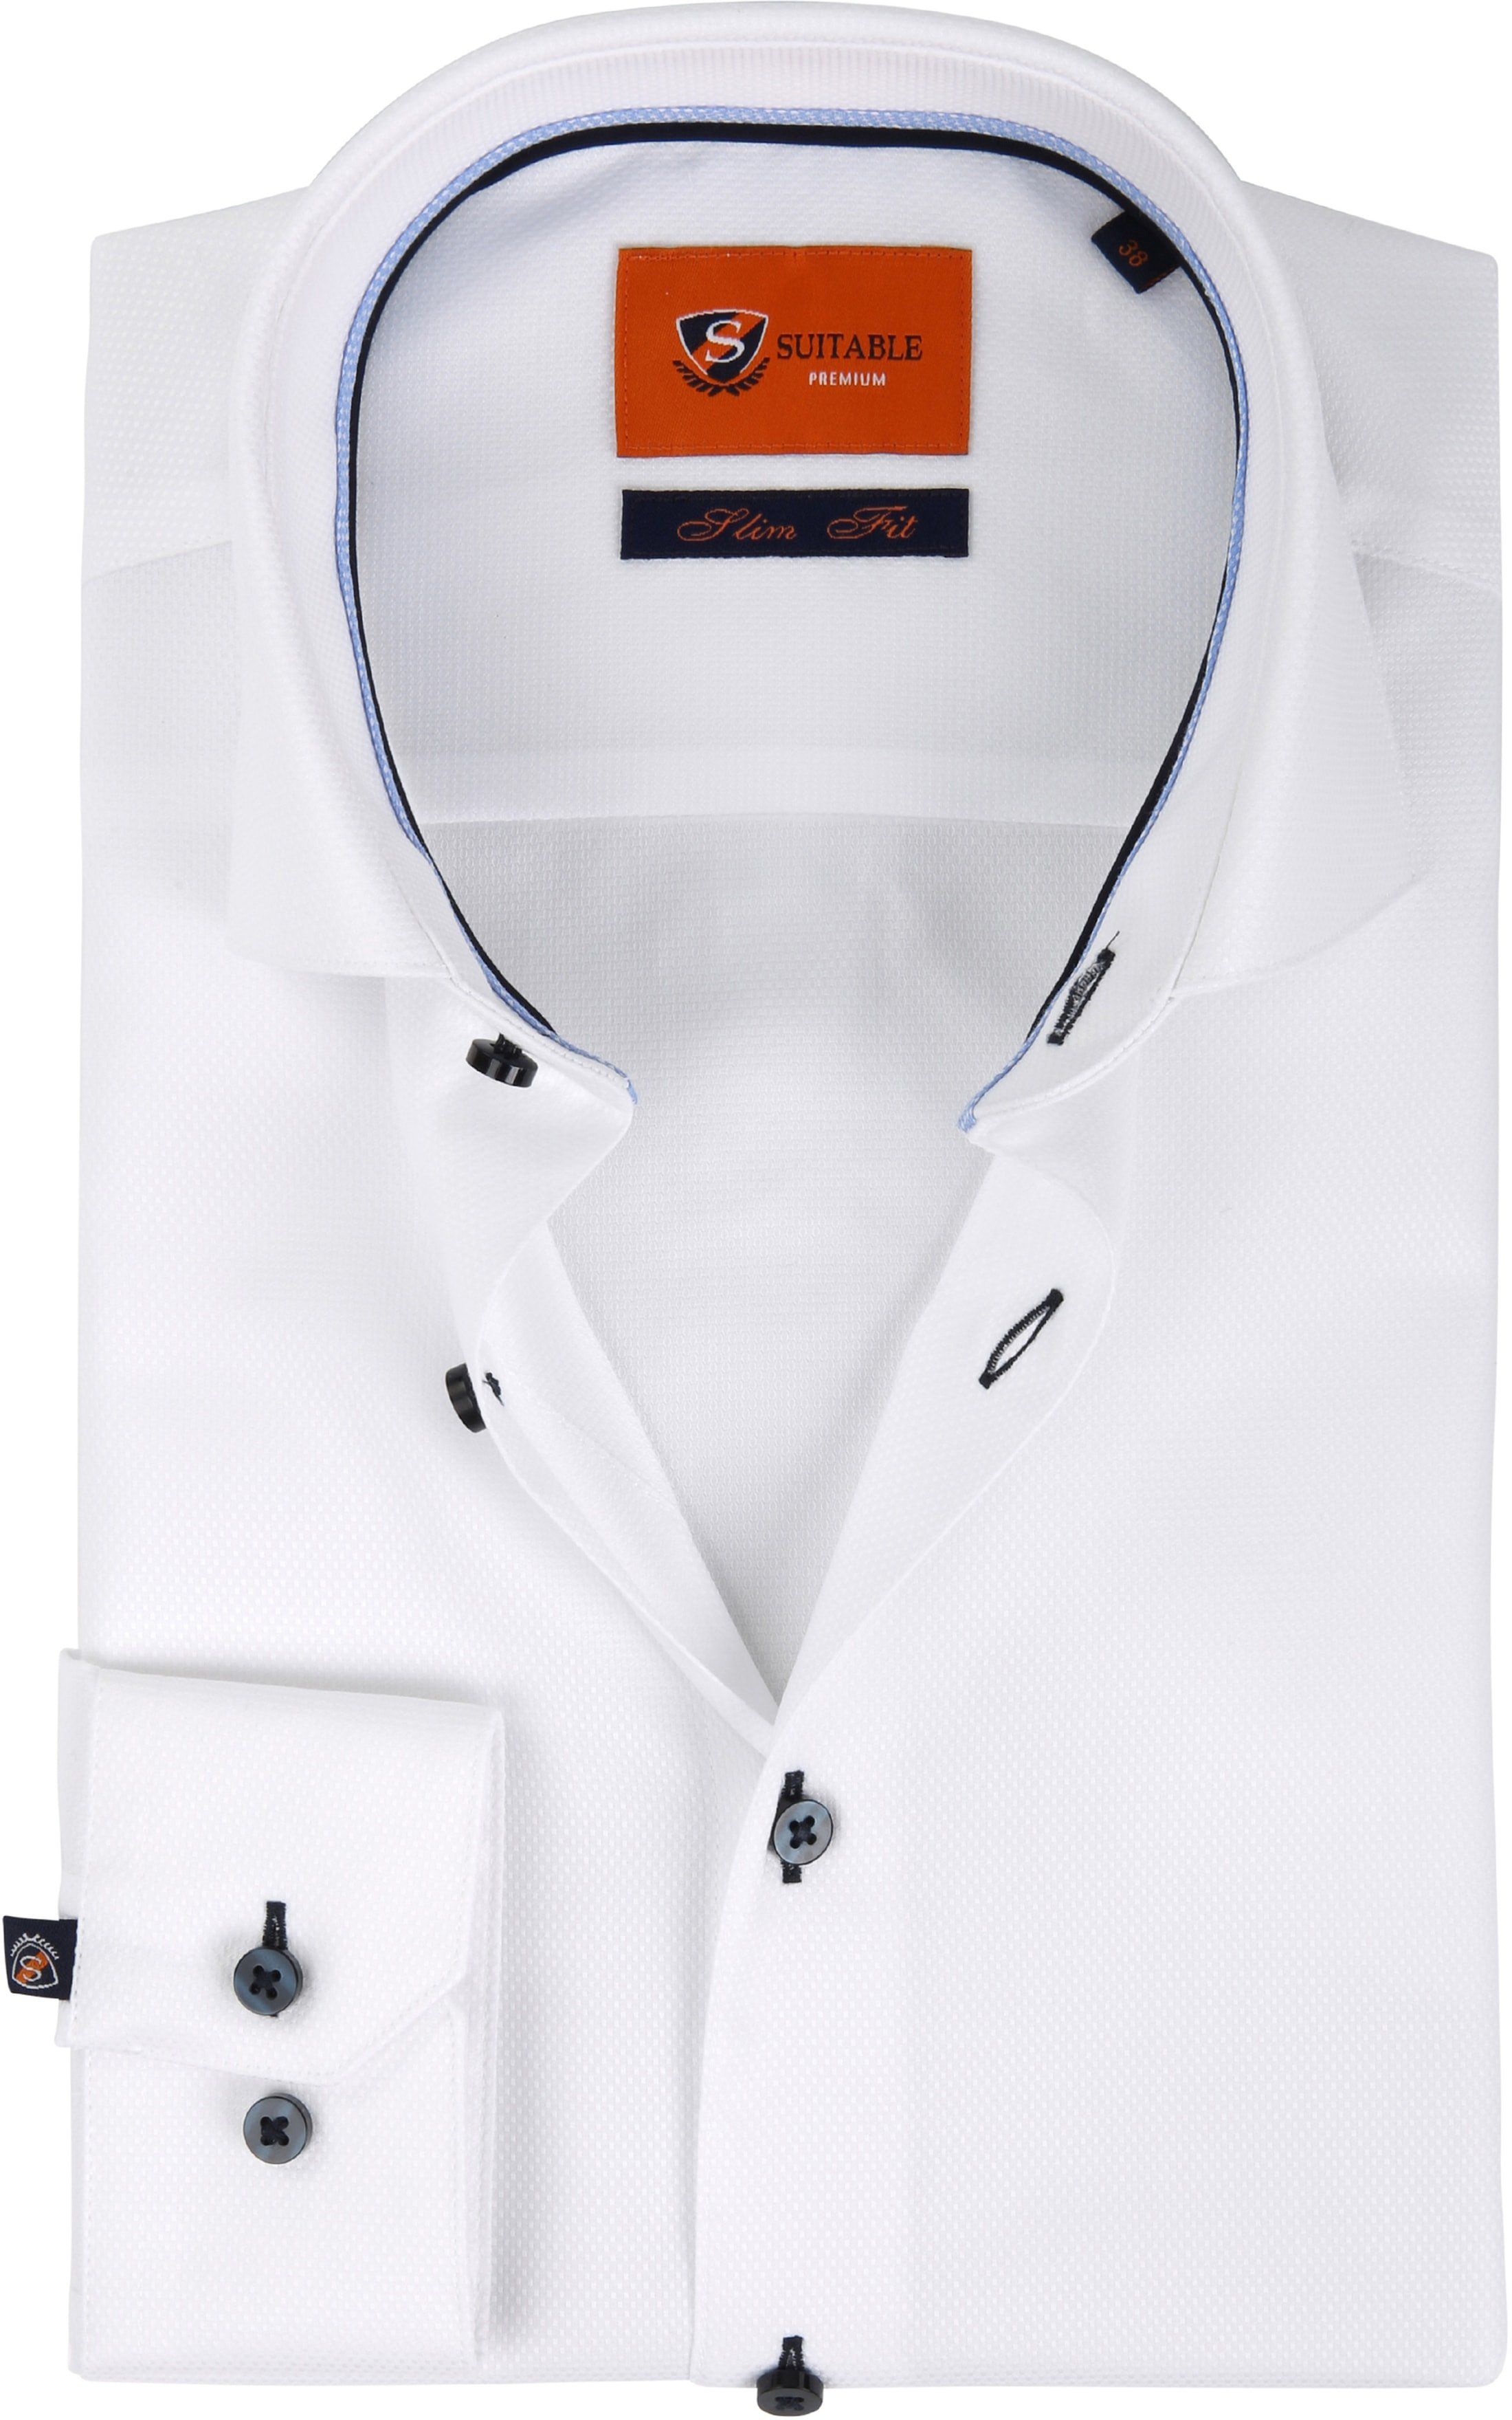 Suitable Shirt D81-18 White size 16 1/2